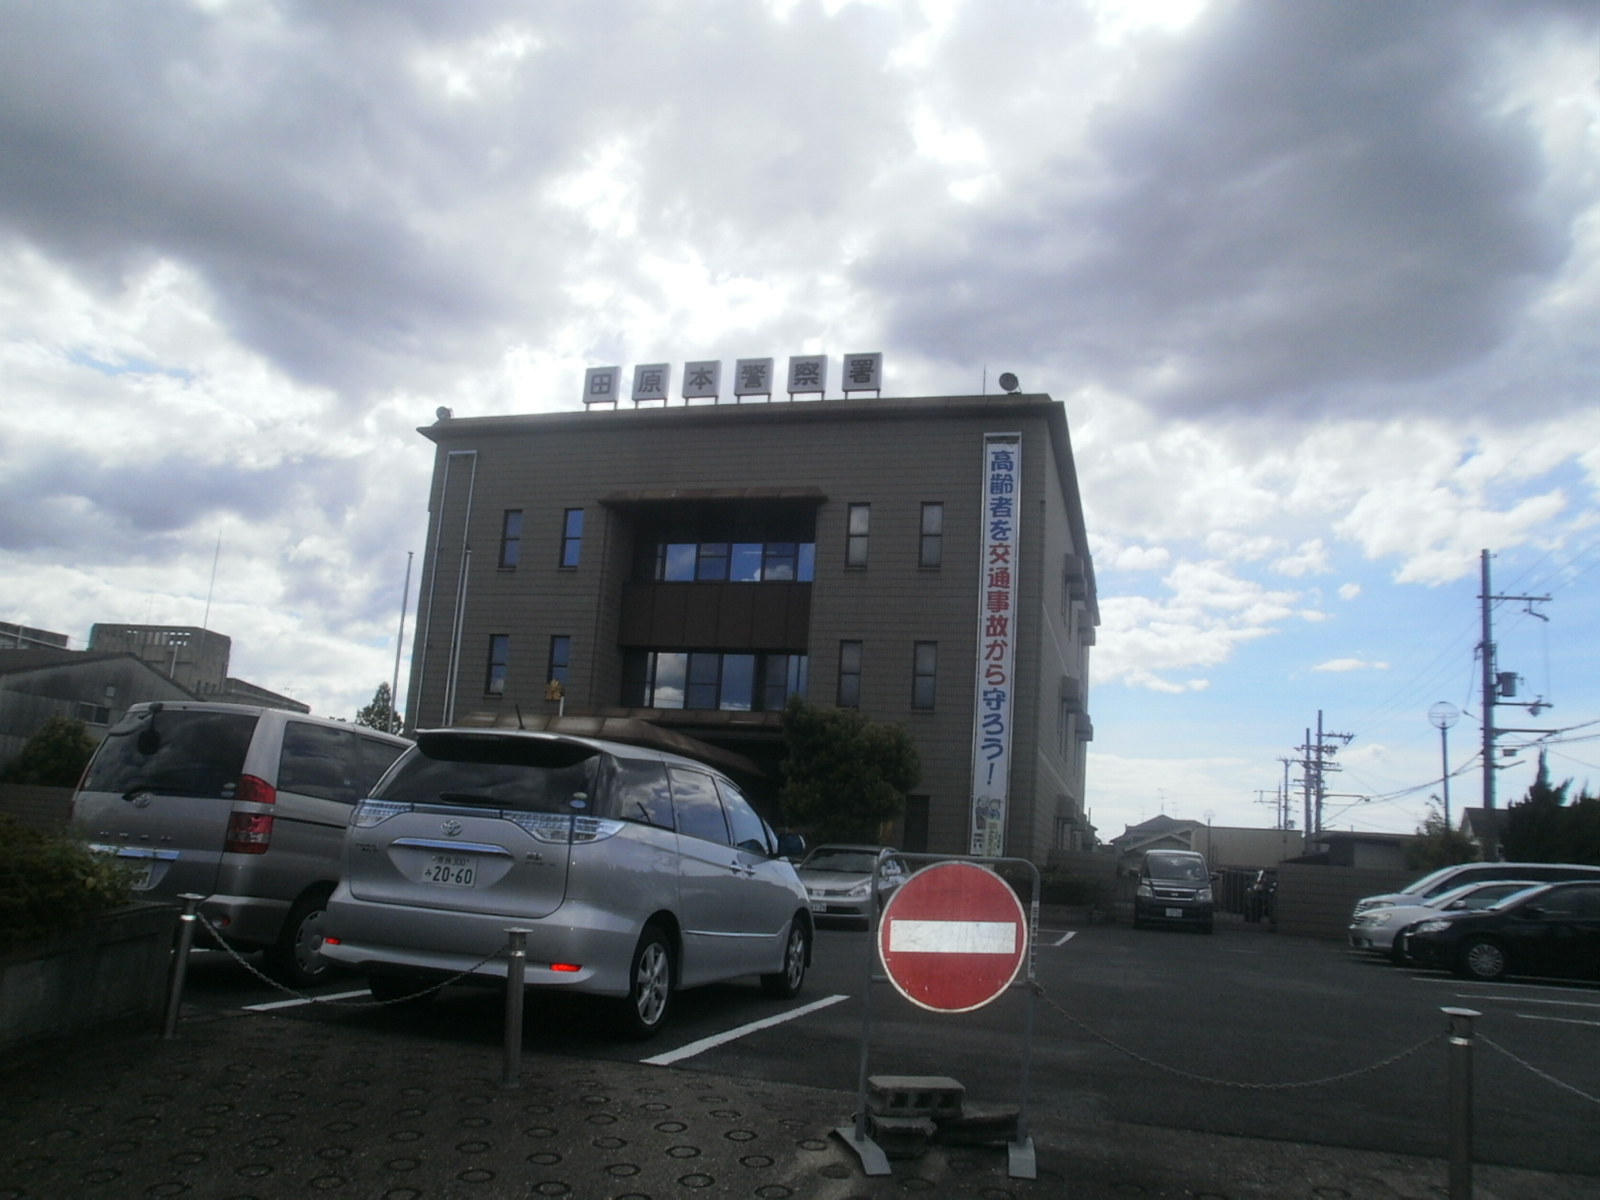 Police station ・ Police box. Tawaramoto police station (police station ・ Until alternating) 404m